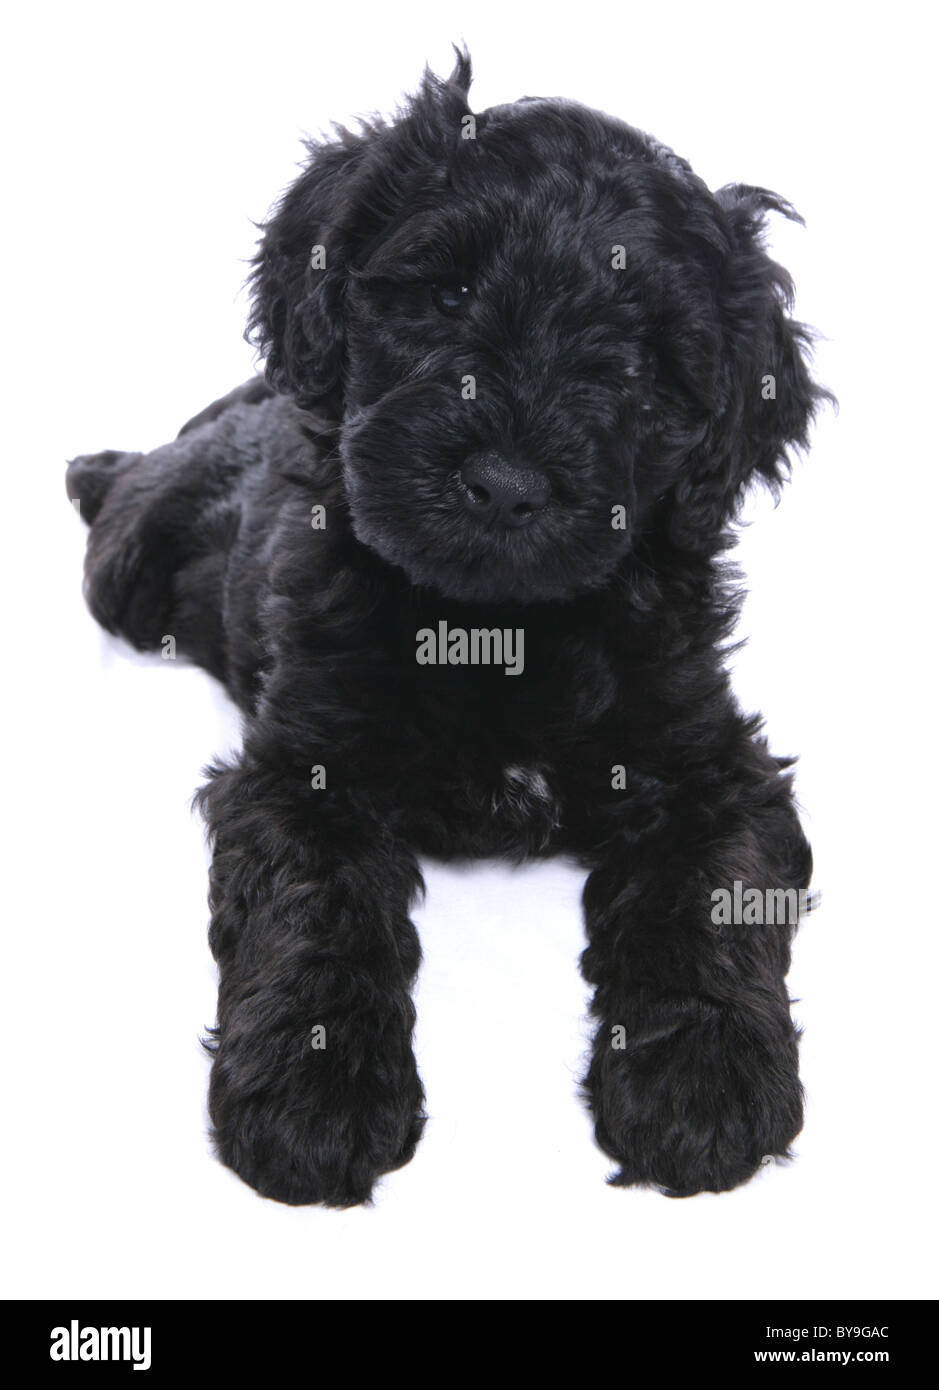 Portuguese water dog puppy studio portrait Stock Photo